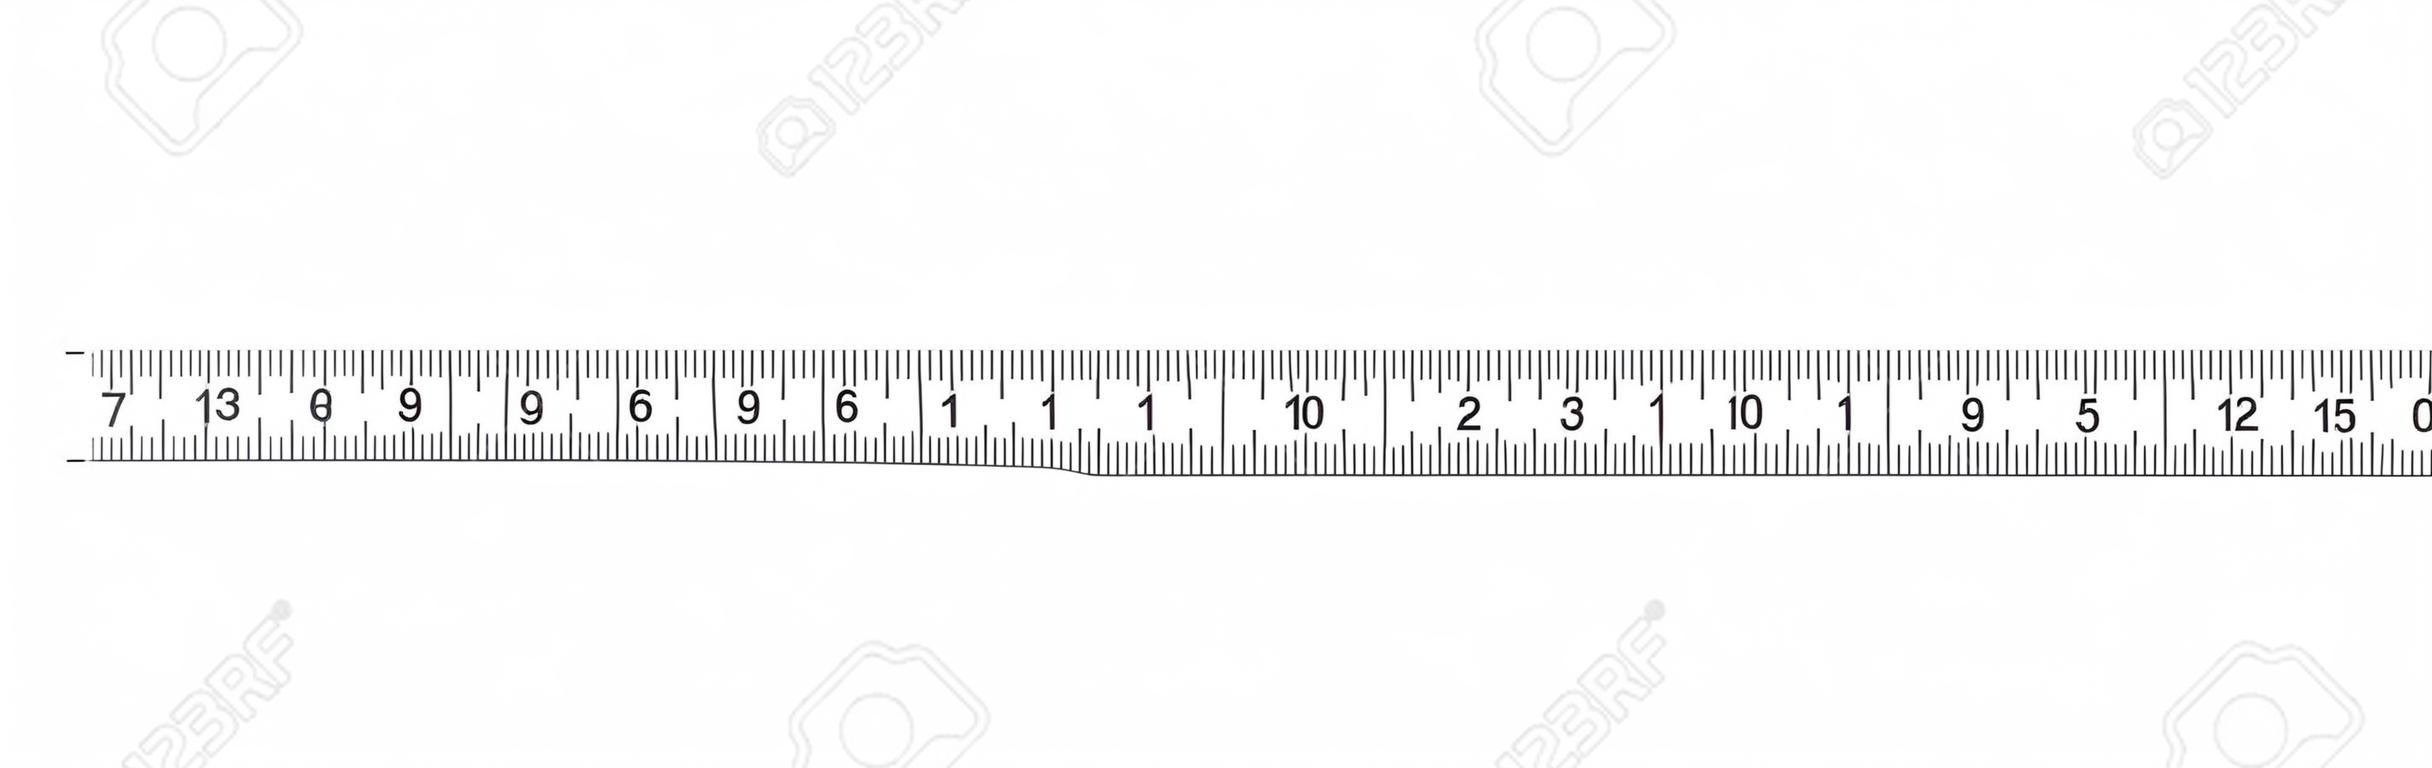 Regla 20 cm. Herramienta de medición. Graduación de regla. Regla rejilla 20 y 1 cm. Unidades indicadoras de tamaño. Indicadores de tamaño de centímetro métrico. Eps10 vectorial